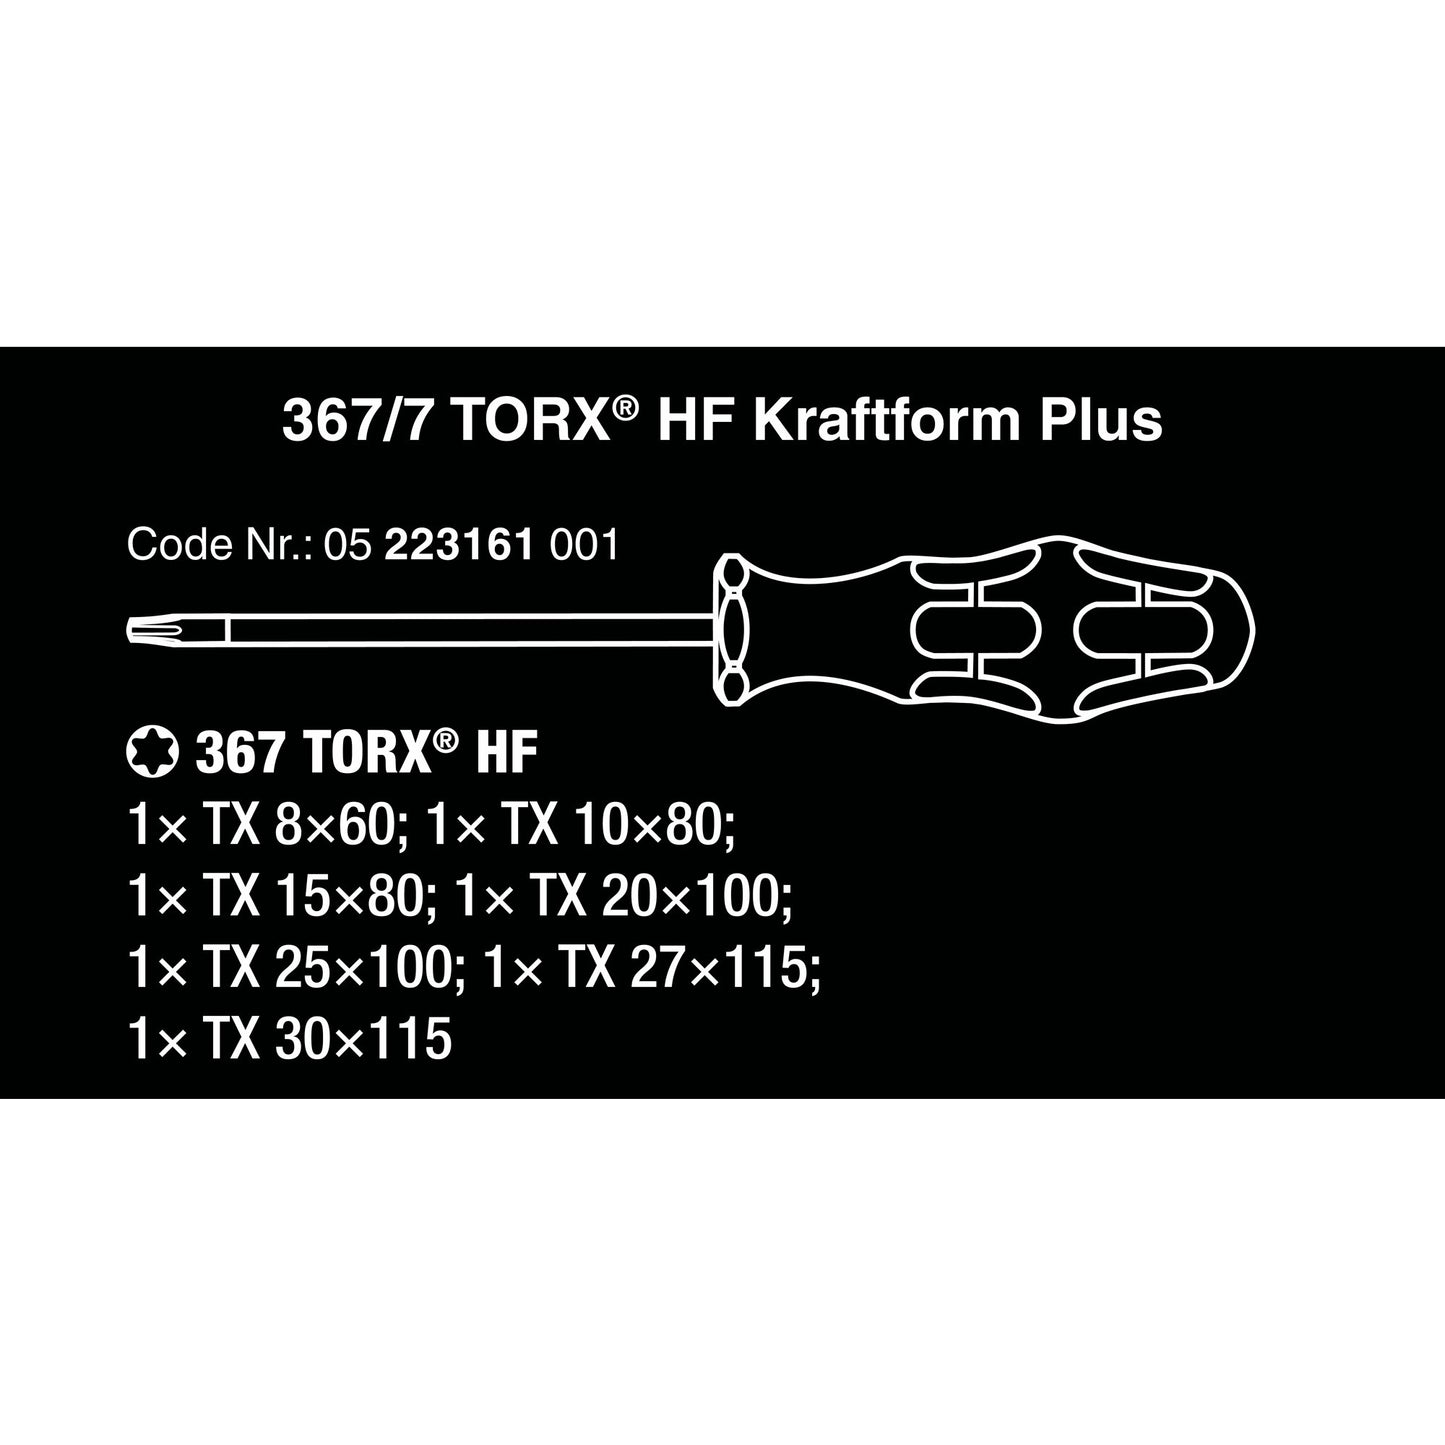 Wera 367 7 Torx HF Cavivitore set kraftform plus +